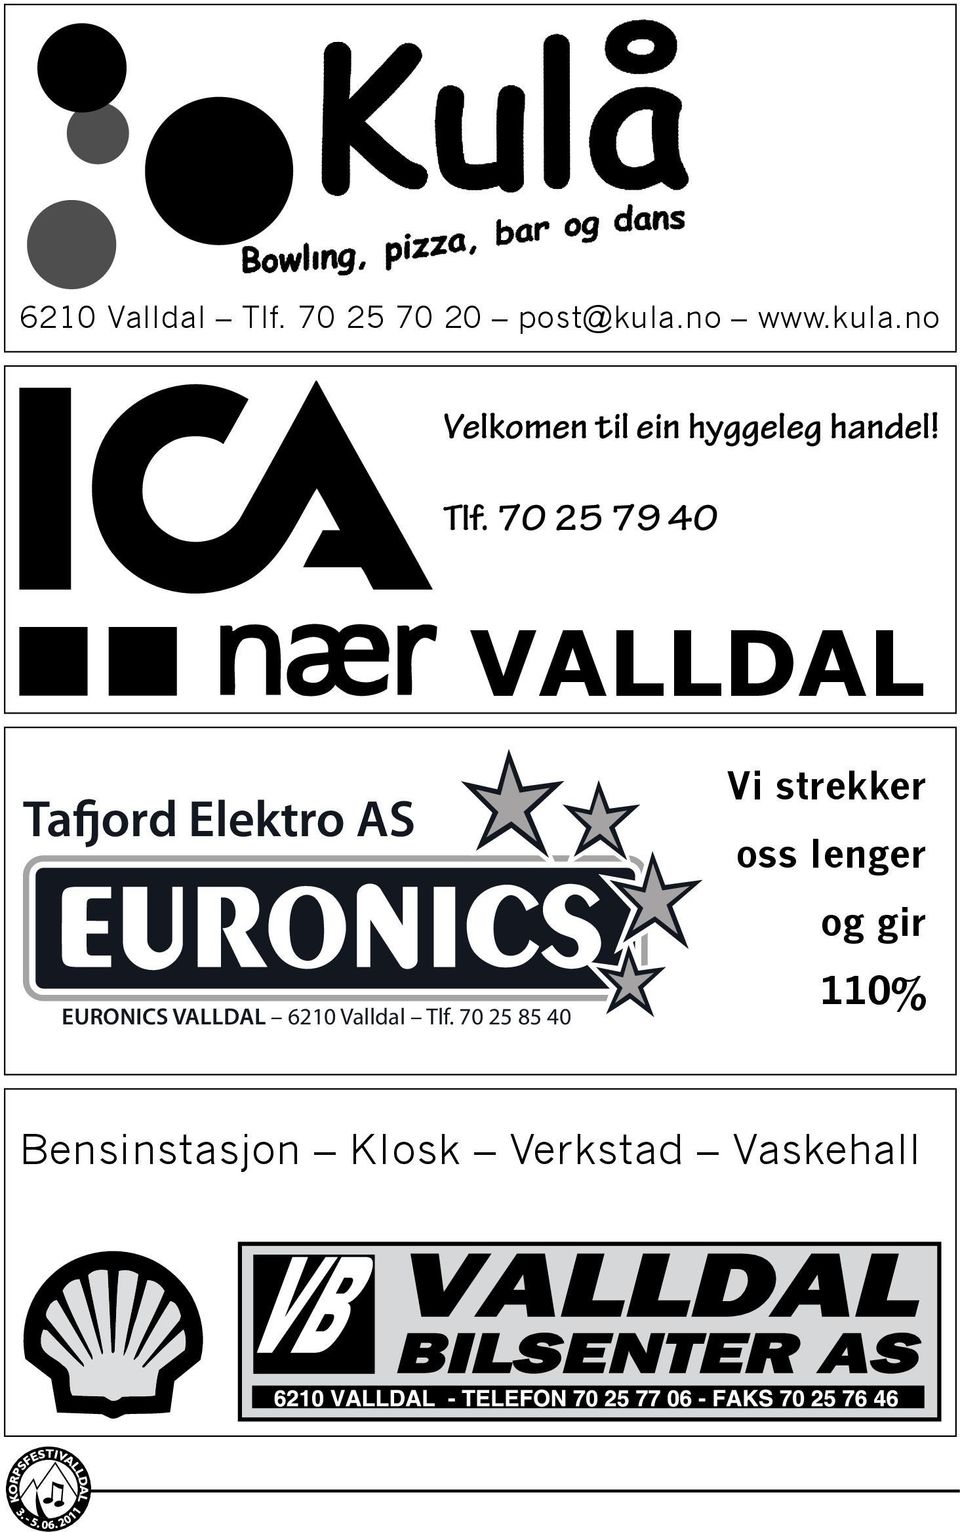 70 25 79 40 Vi strekker oss lenger og gir 110% VALLDAL Tafjord Elektro AS EURONICS